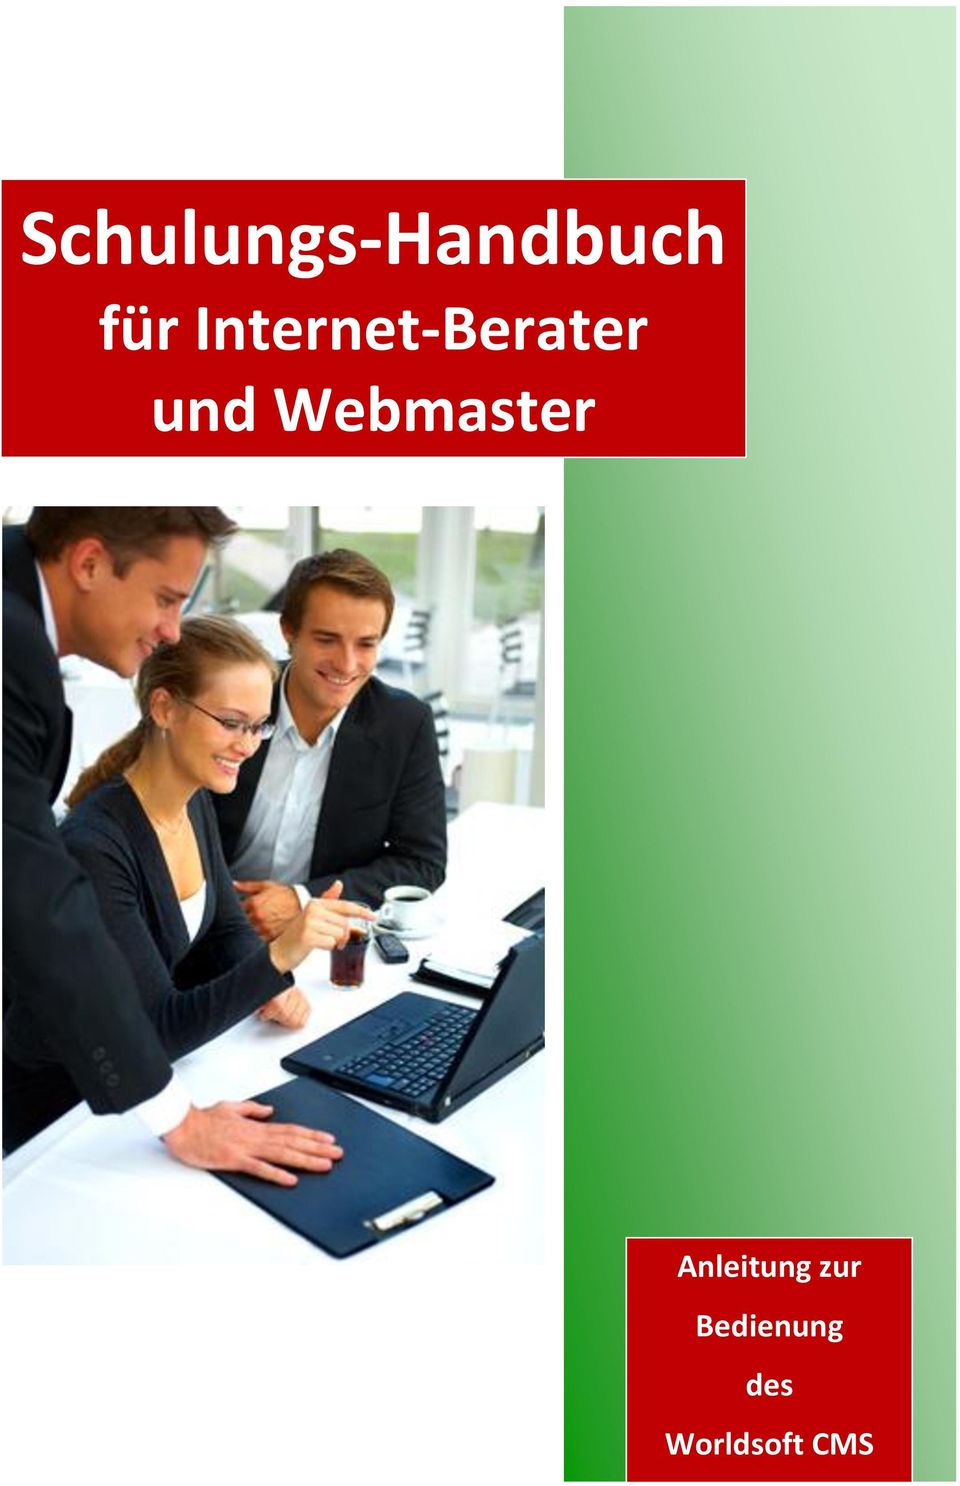 Webmaster Anleitung zur